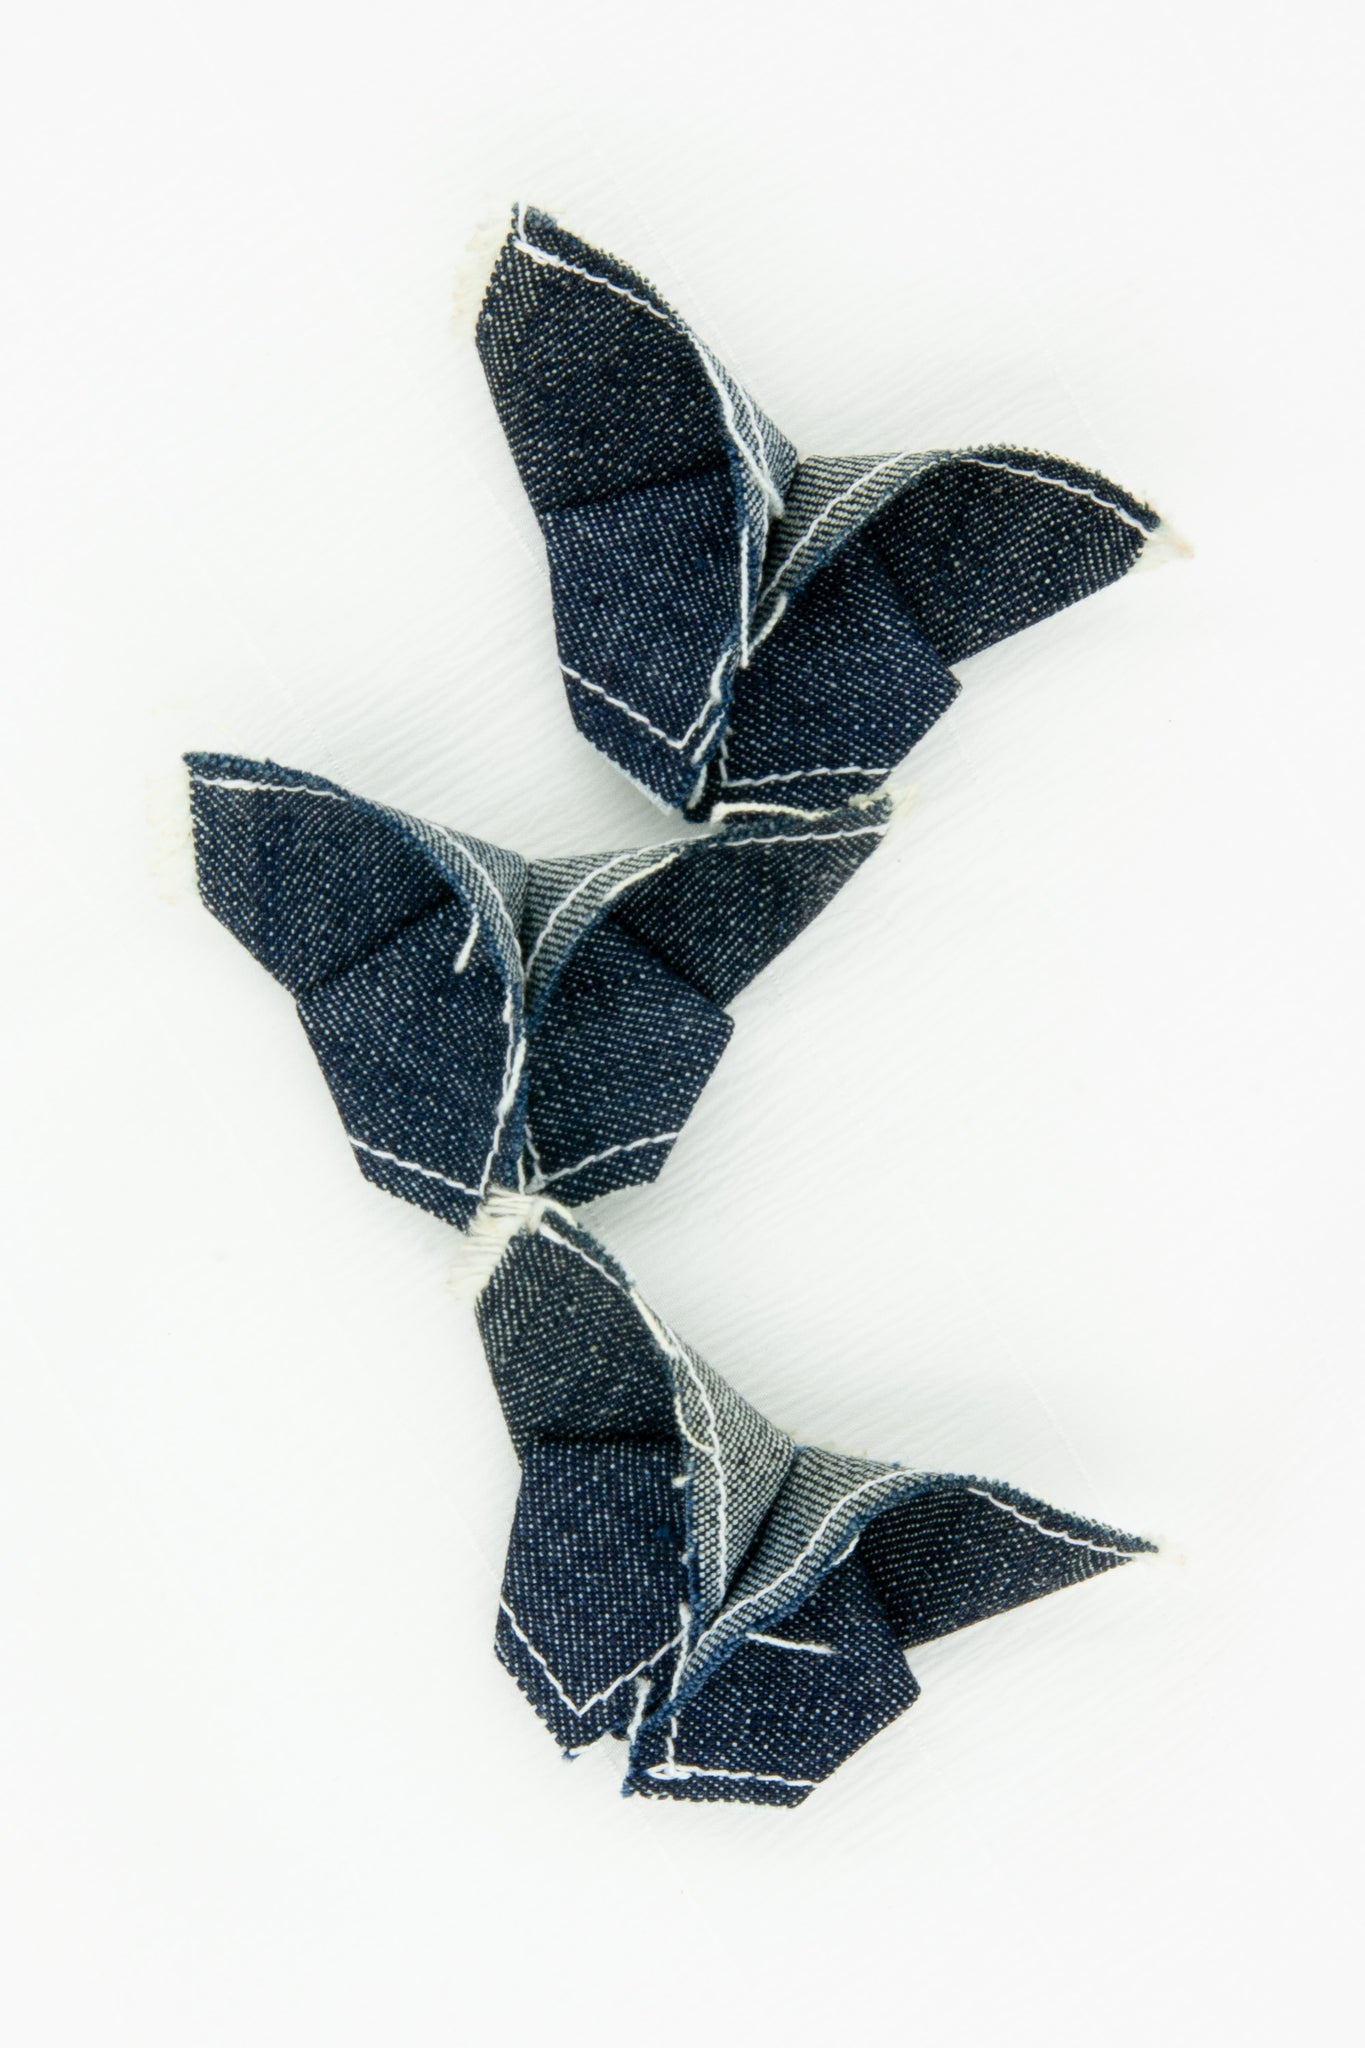 Butterfly Brooch in Dark Indigo Denim with Contrast Stitching